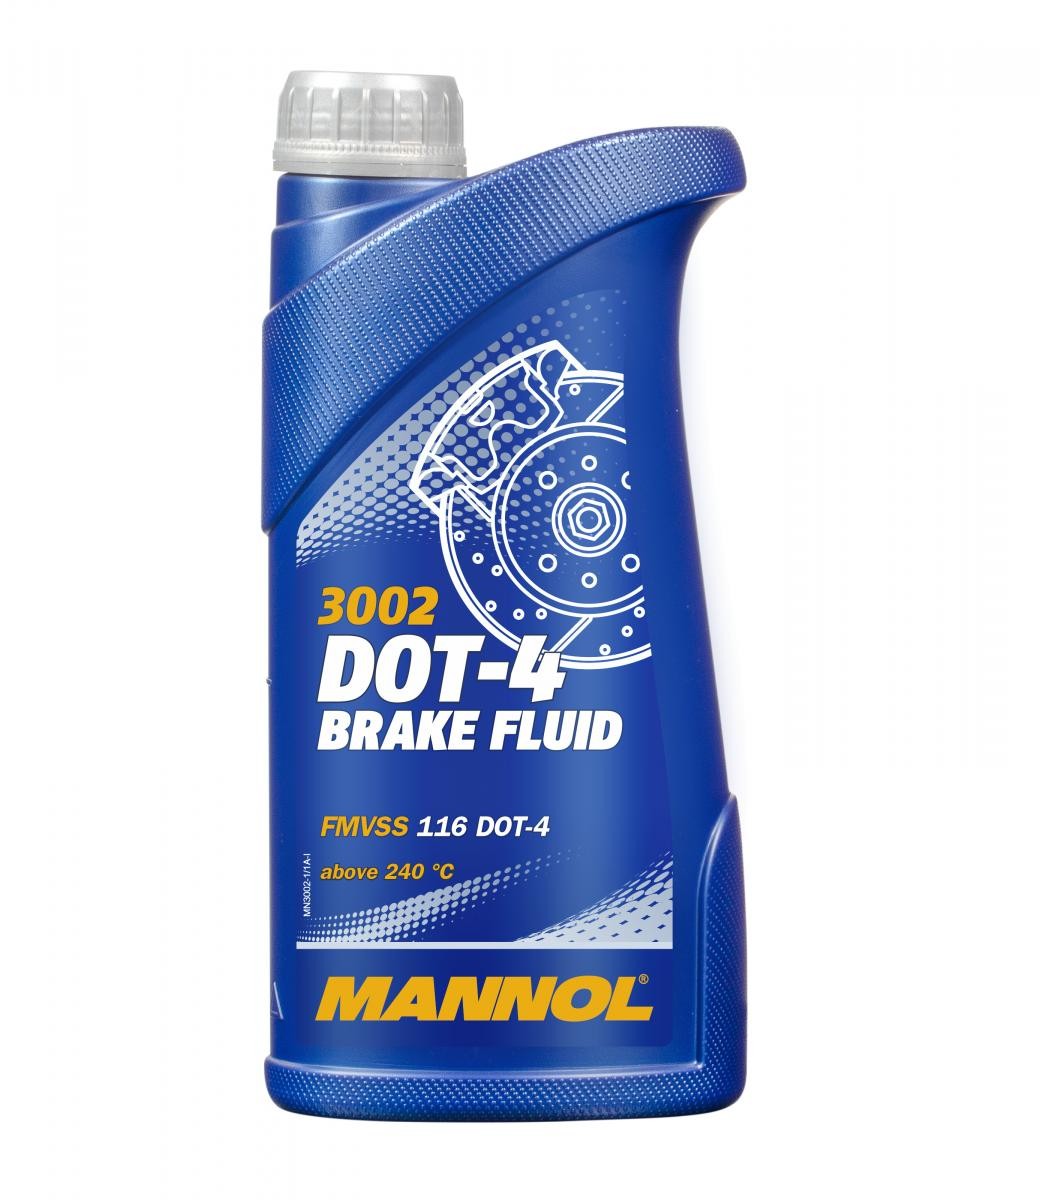 YObykes YOEXL Bremsflüssigkeit 1l MANNOL DOT-4 BRAKE FLUID MN3002-1